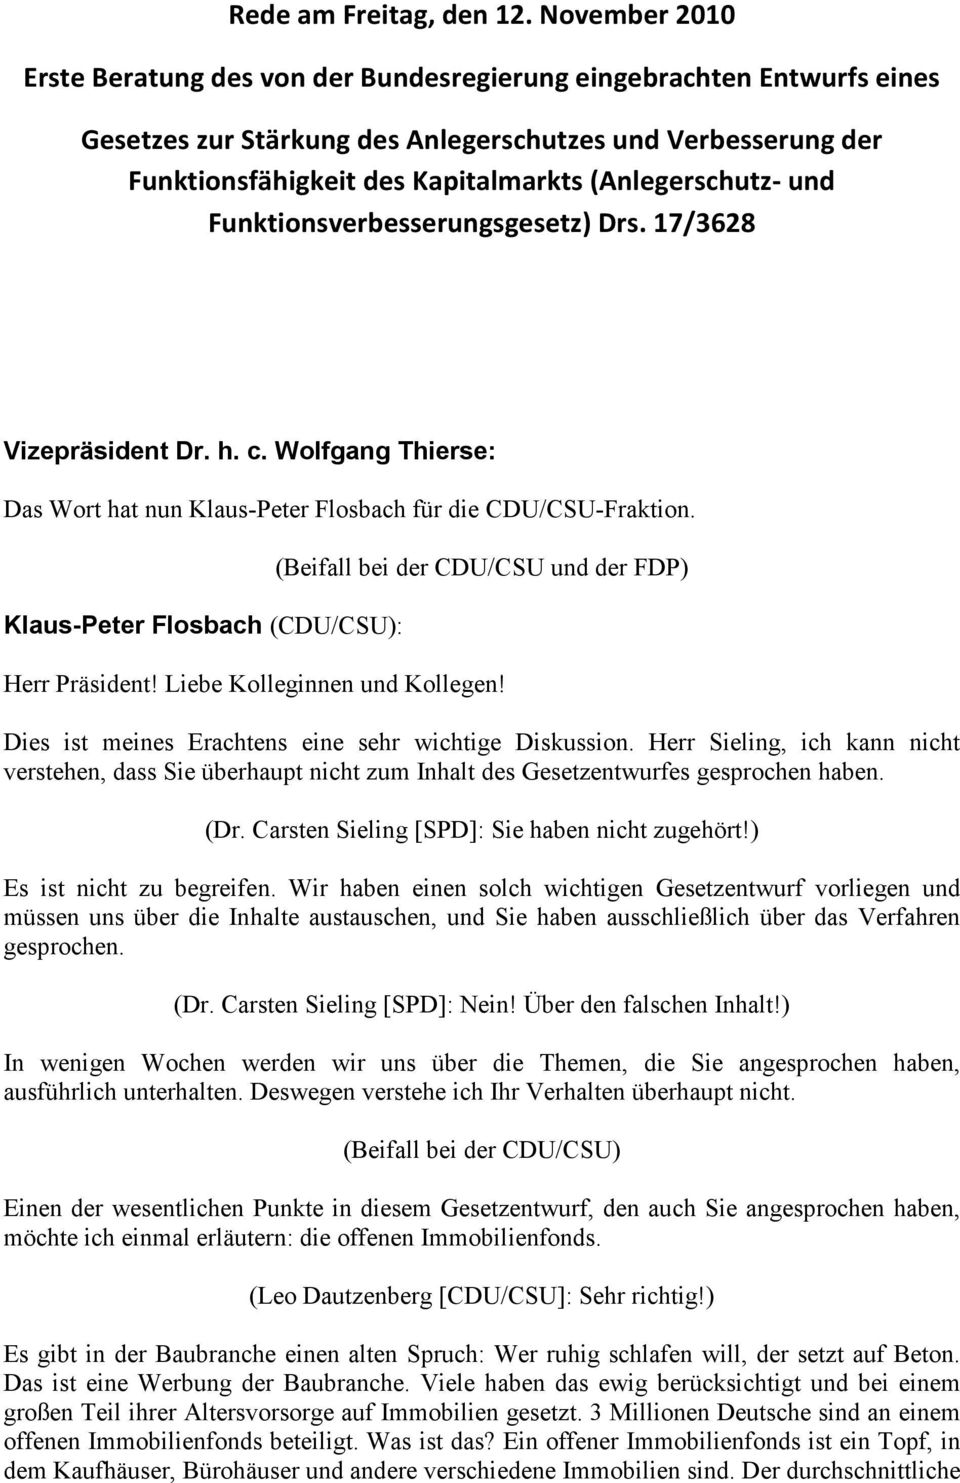 (Anlegerschutz- und Funktionsverbesserungsgesetz) Drs. 17/3628 Das Wort hat nun Klaus-Peter Flosbach für die CDU/CSU-Fraktion. Herr Präsident! Liebe Kolleginnen und Kollegen!